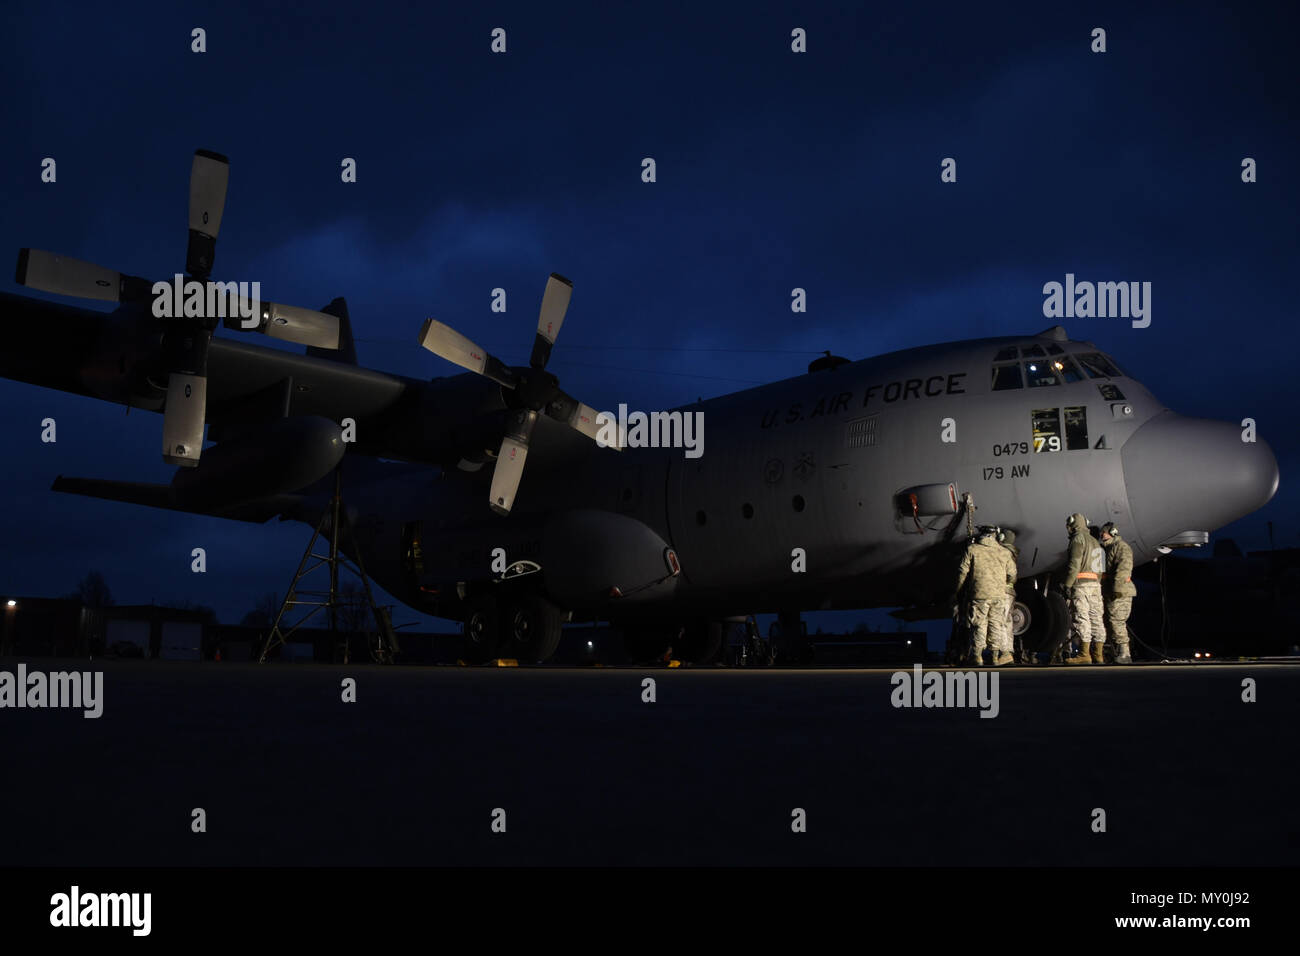 Membri della 179th Airlift Wing gruppo Manutenzione ispezionare l'atterraggio sistema di ritrazione di un C-130H Hercules mediante un collettore per il sollevamento con martinetto per sollevare il velivolo da terra dic. 29, 2016 sul flightline presso il 179th Airlift Wing, Mansfield, Ohio. Il 179th Airlift Wing è sempre su una missione di essere la prima scelta per rispondere alle comunità, lo Stato federale e le missioni con un trusted team altamente qualificato avieri. (U.S. Air National Guard foto di Airman Megan Pastore/rilasciato) Foto Stock